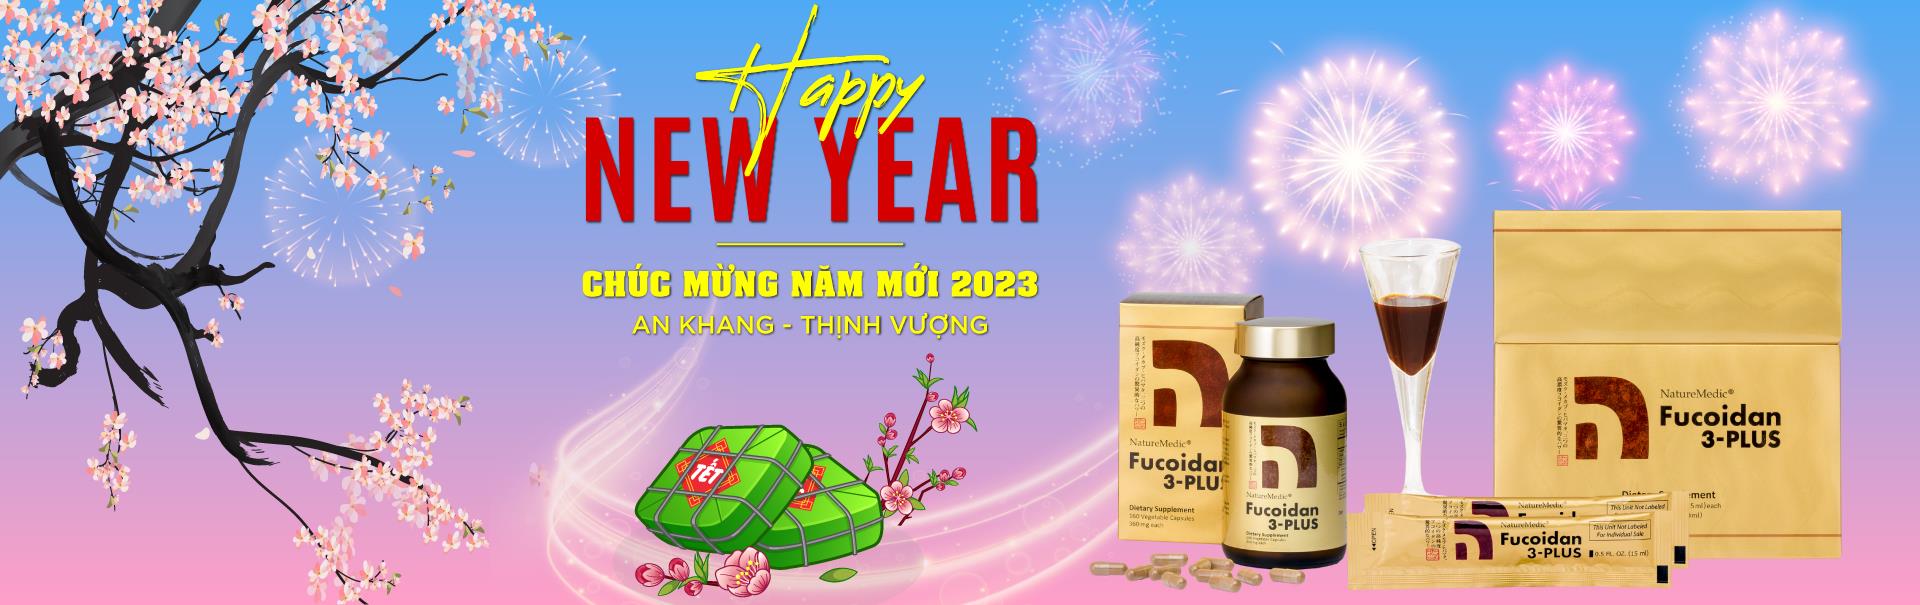 Fucoidan 3 Plus Nhật Bản Chúc Mừng Năm Mới 2023